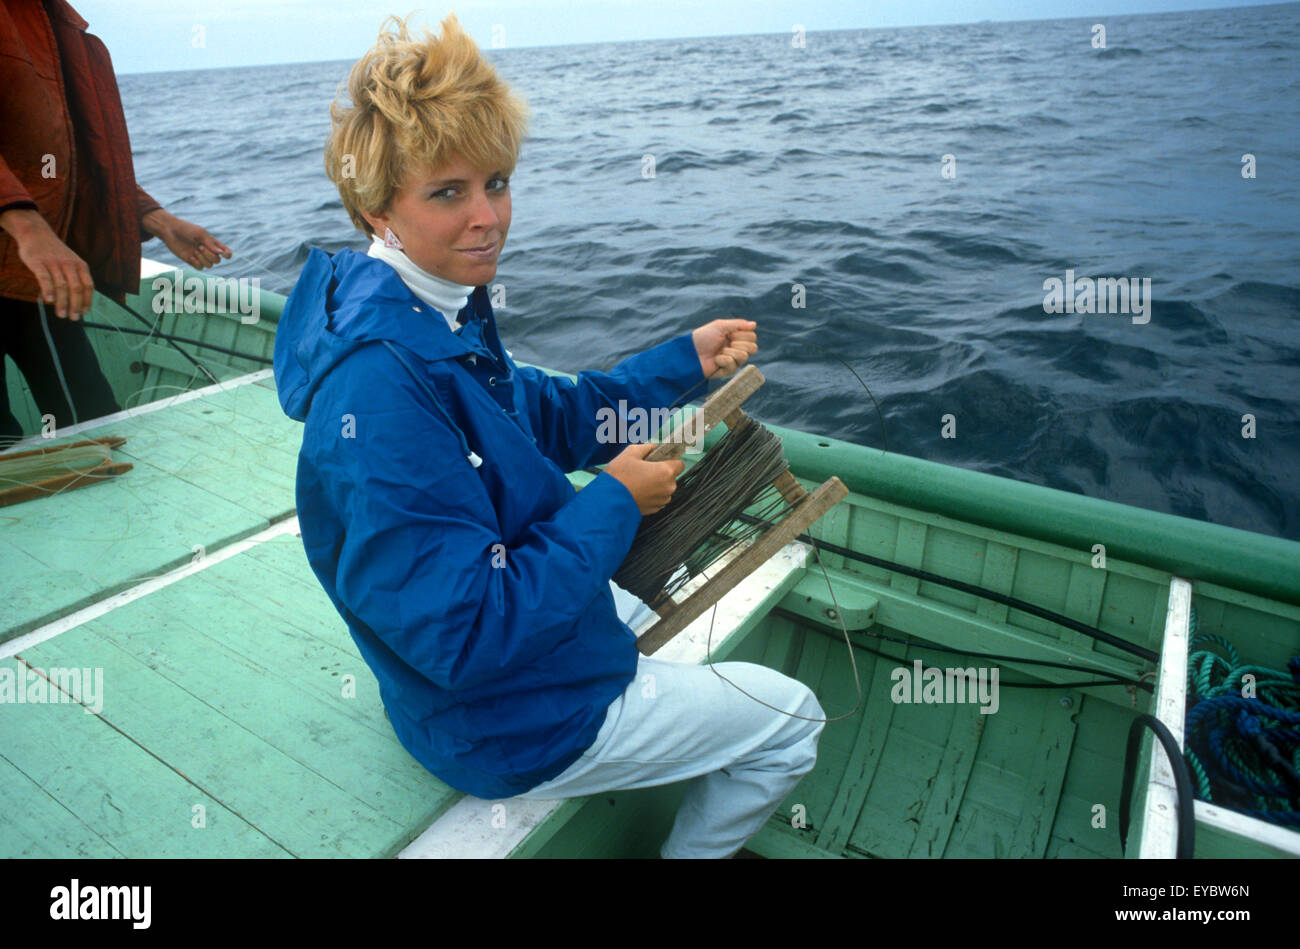 América del Norte, Canadá, Terranova, Bonavista, jigging de bacalao en un barco de pesca Foto de stock